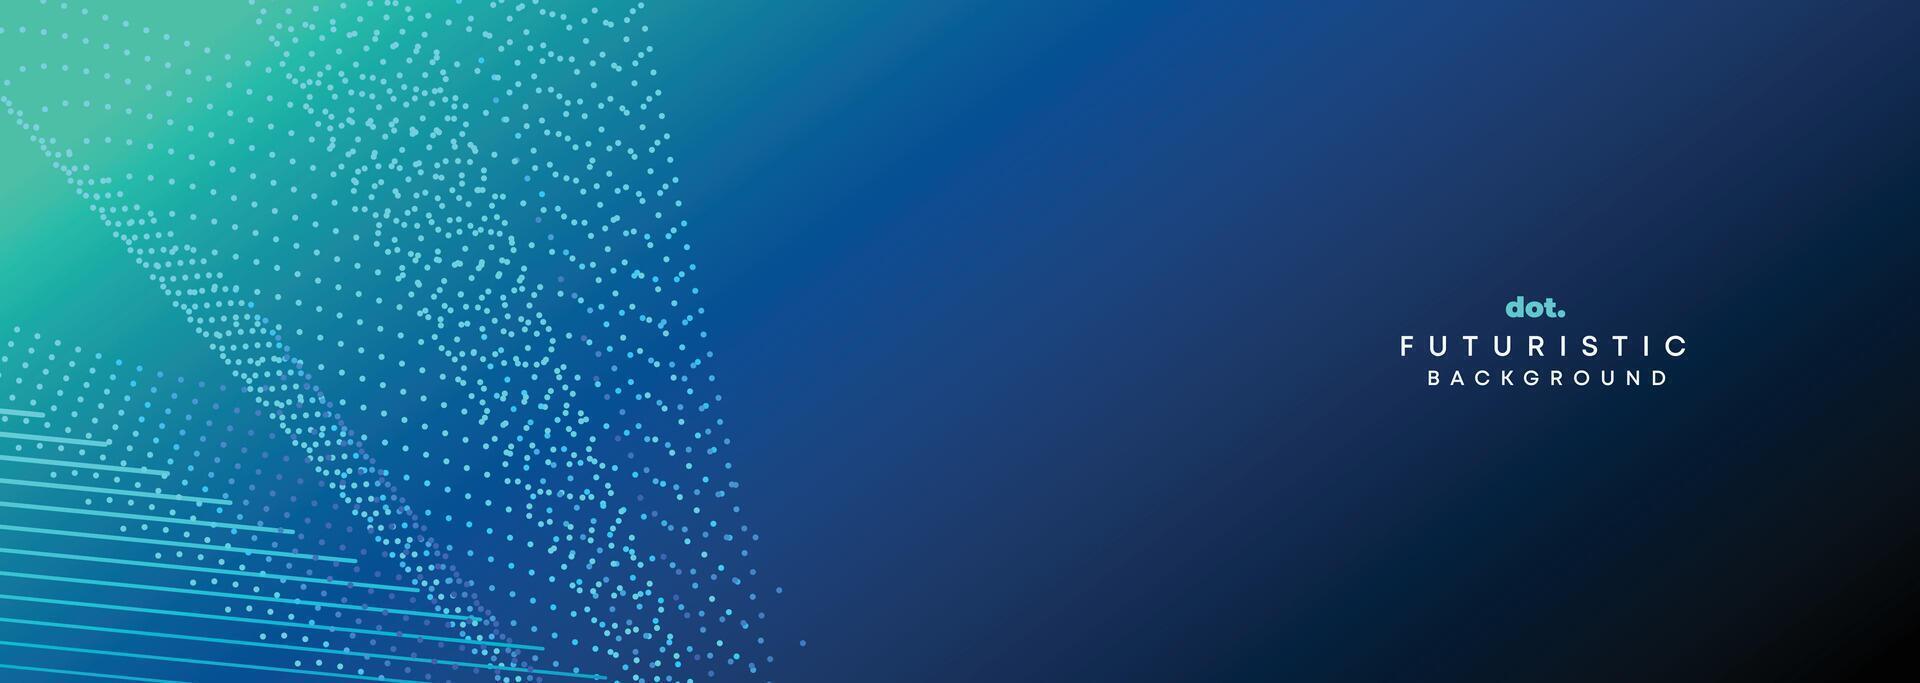 donker blauw groen helling vloeiende punt golvend deeltje meetkundig technologie abstract banier achtergrond. digitaal futuristische marine blauw stippel Golf concept voor wetenschap, muziek- omslag, website, hoofd vector